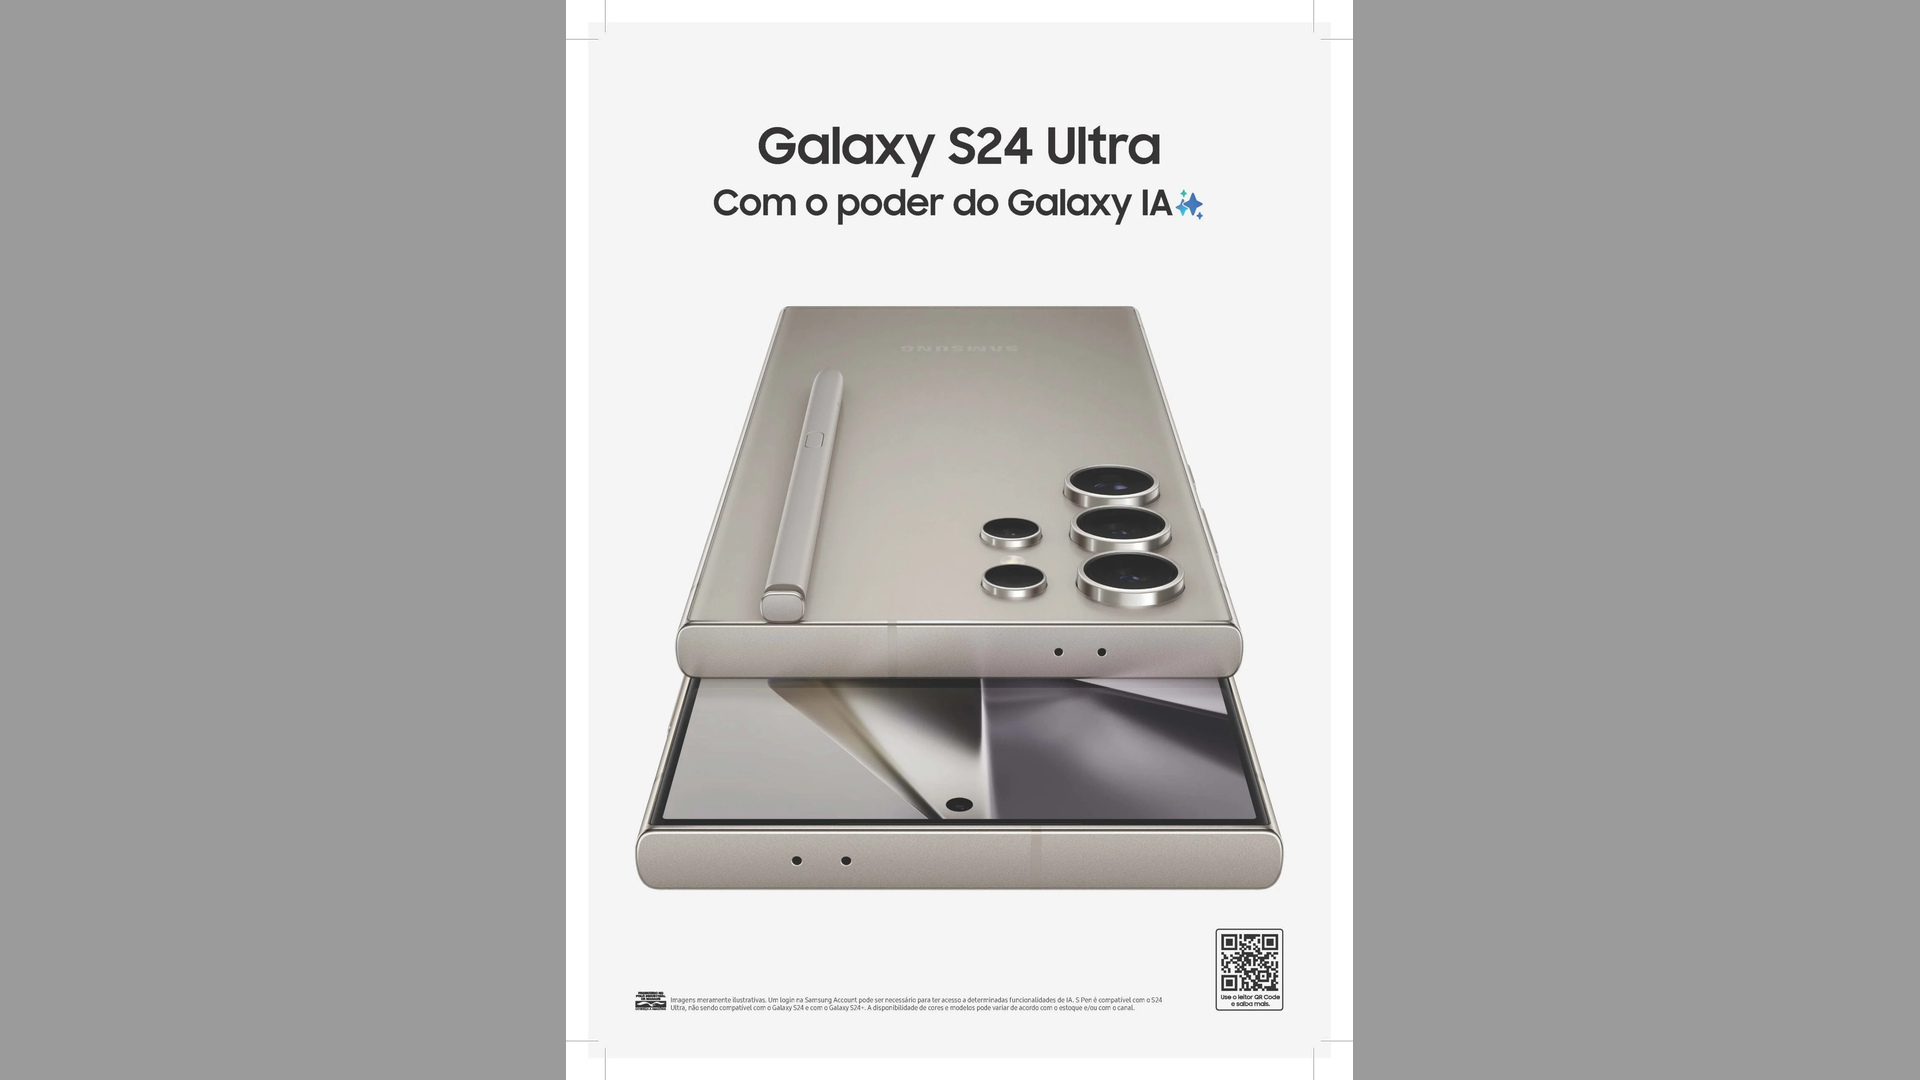 پوستر تبلیغاتی گلکسی S24 اولترا در برزیل منتشر شد